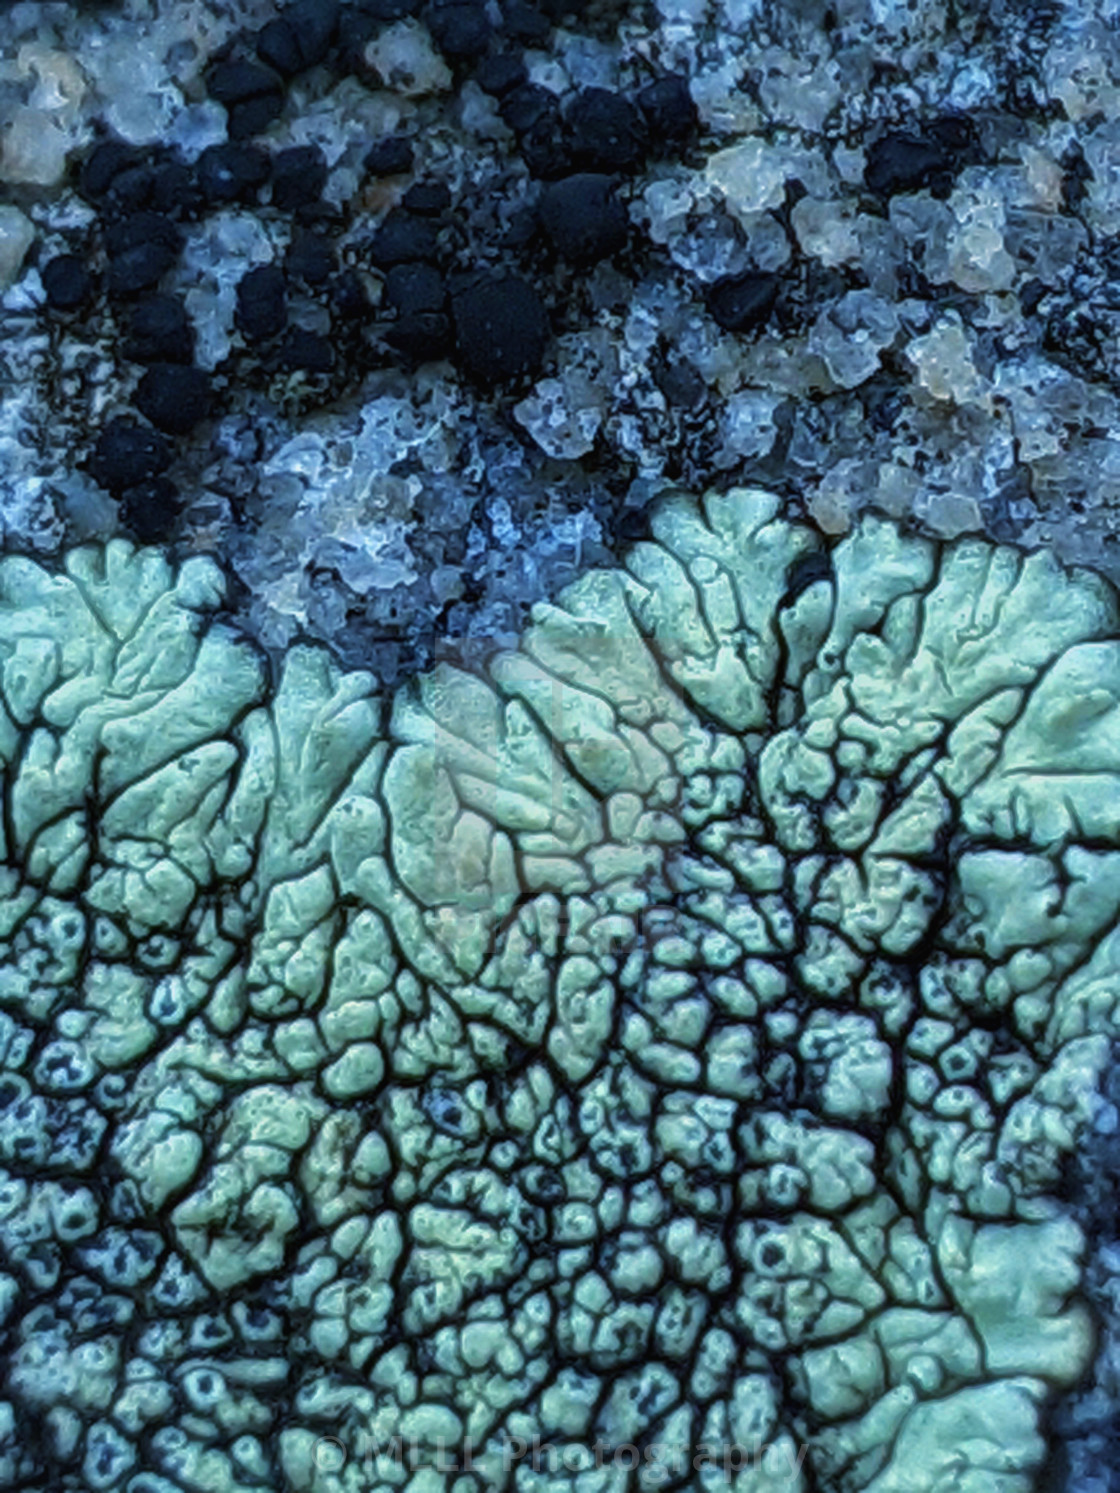 "Lichen seas" stock image